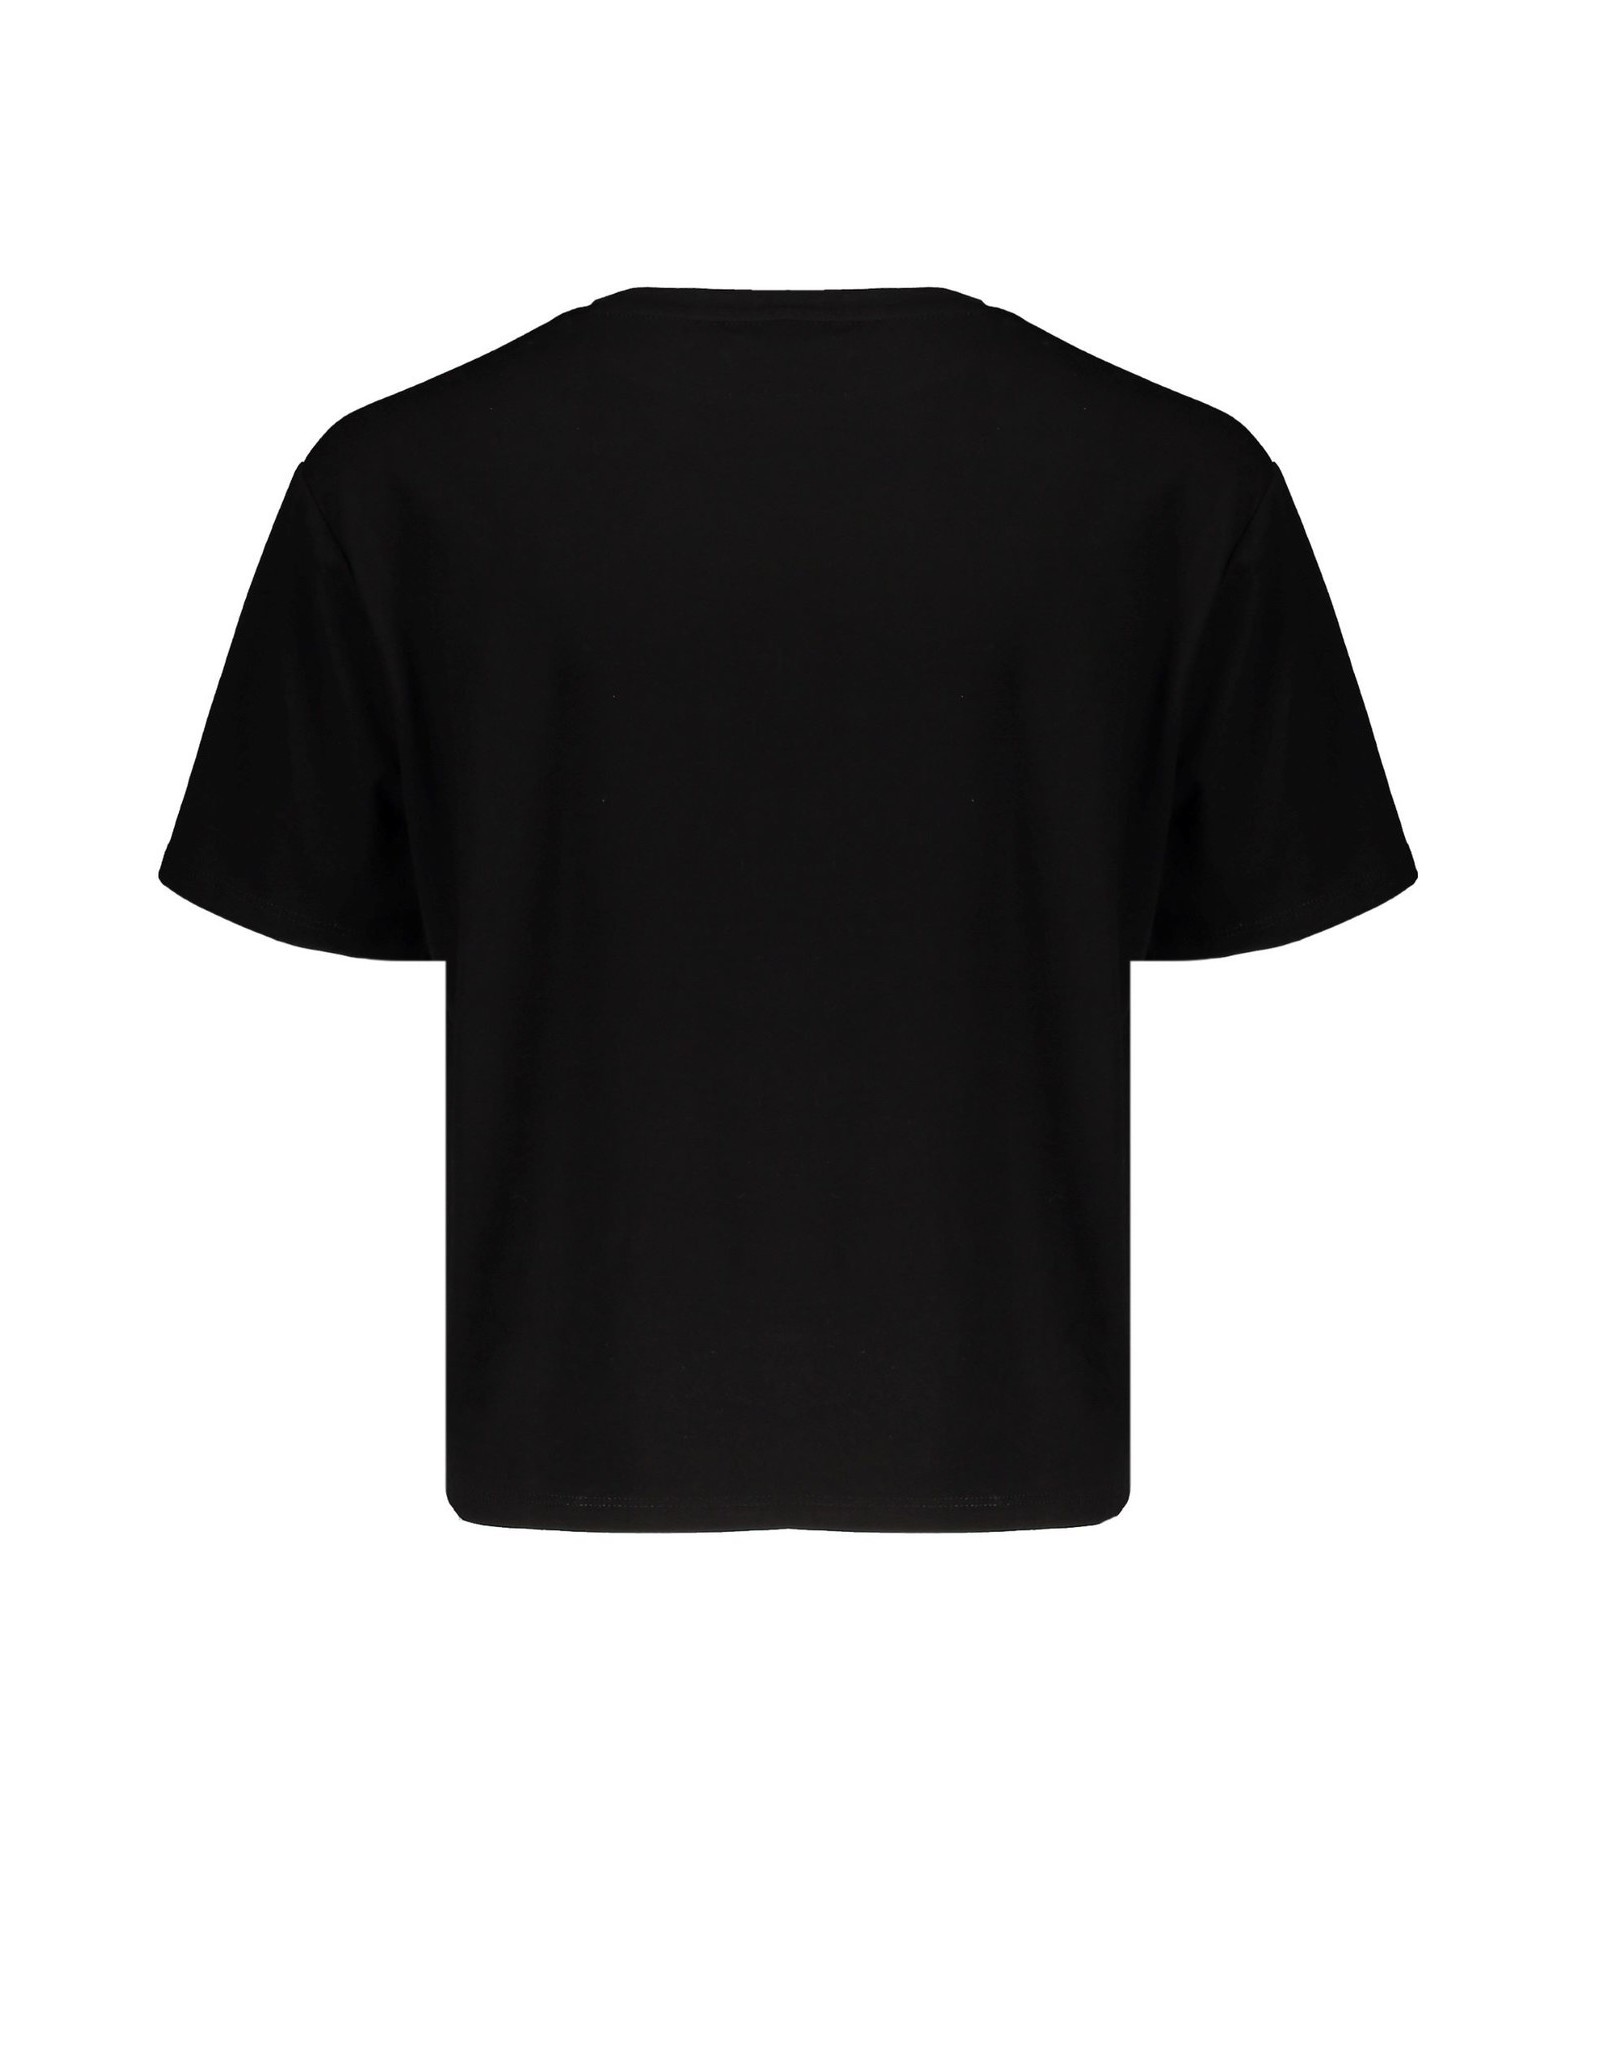 Nobell NoBell shirt 3400 jet black